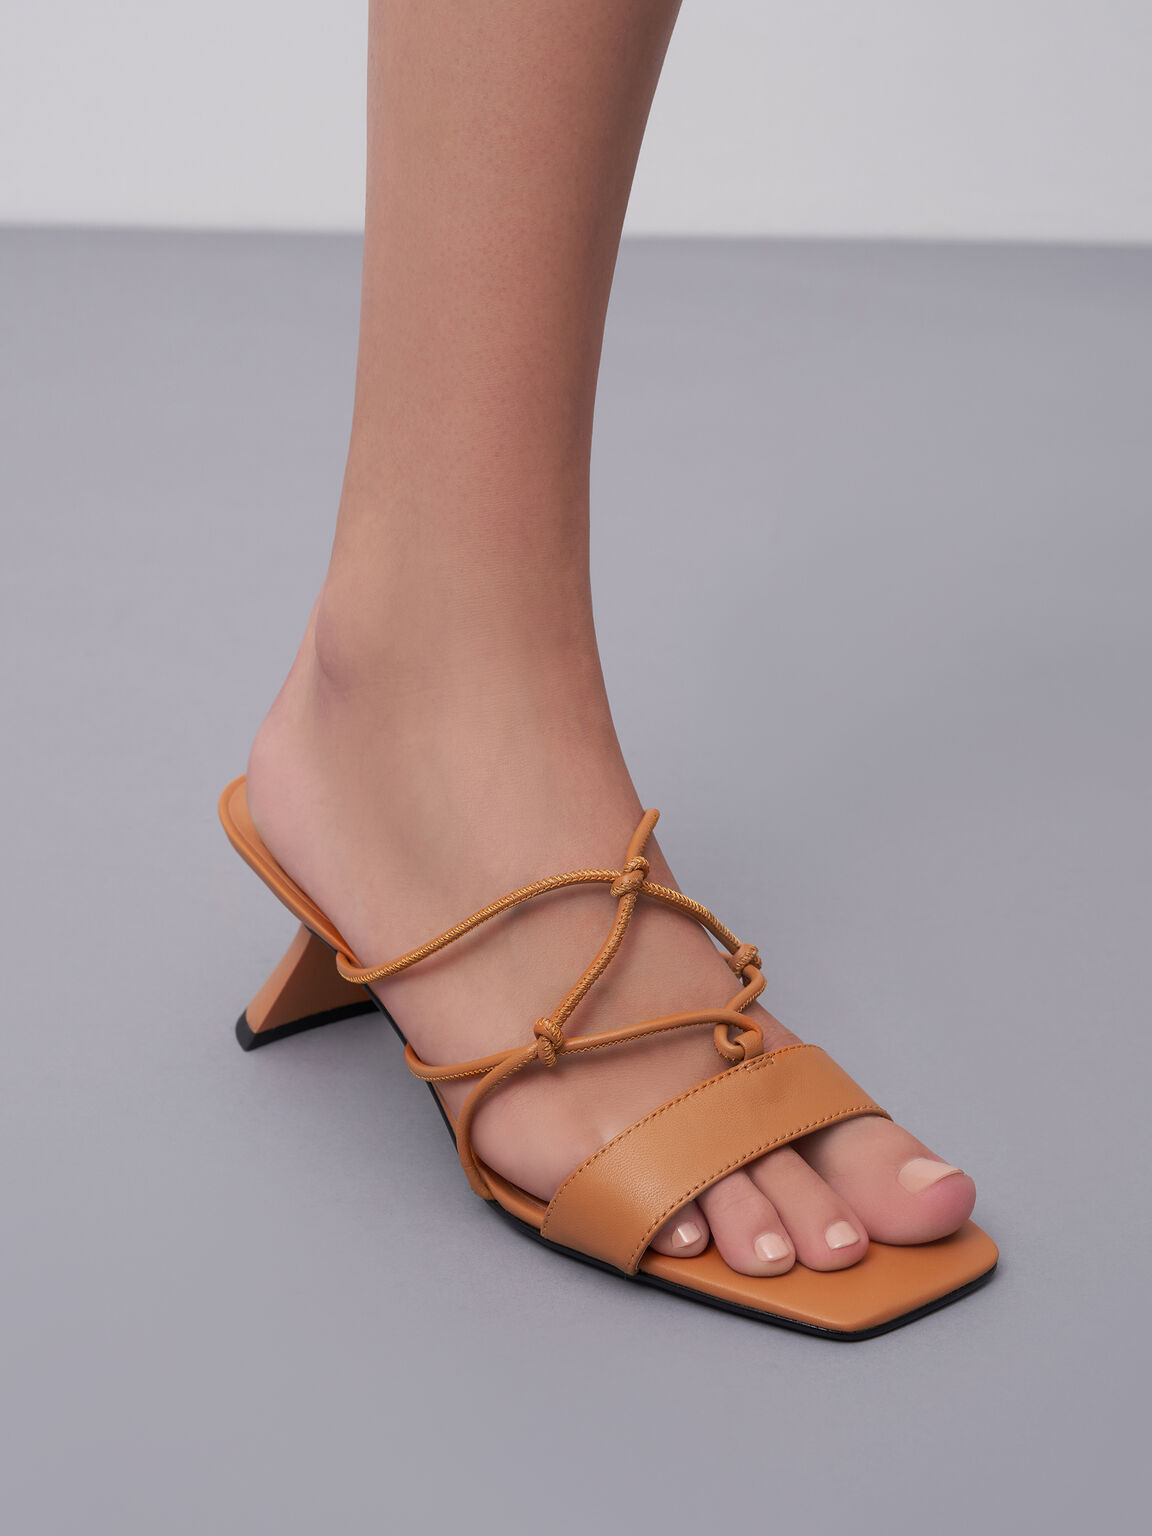 Sandal Sculptural Heel Strappy Leather, Orange, hi-res